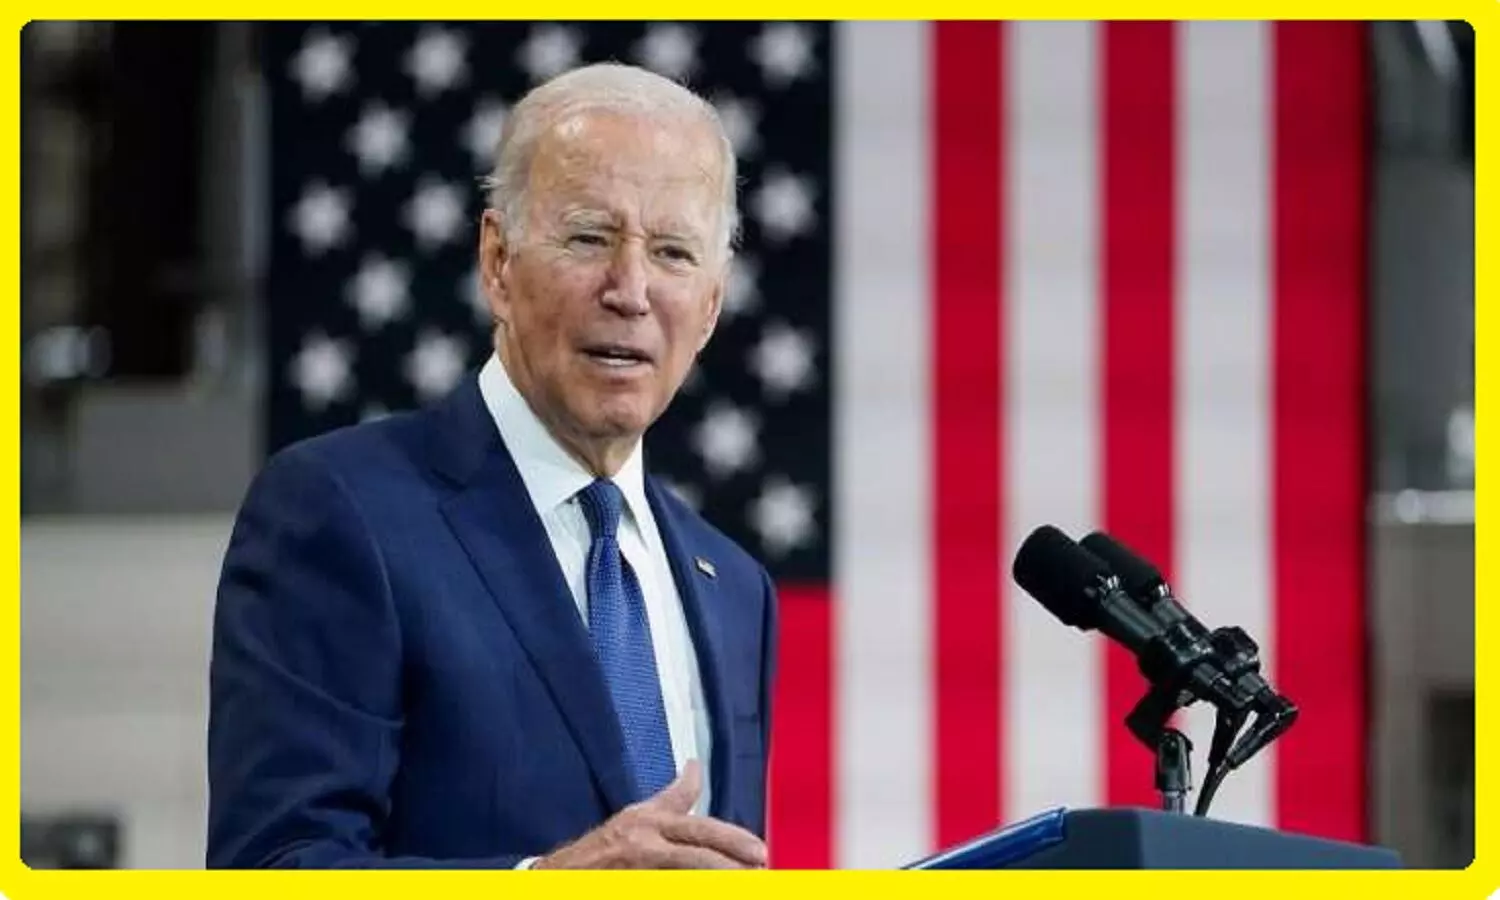 Joe Biden On Pakistan: अमेरिकी राष्ट्रपति जो बाइडेन ने पाकिस्तान को दुनिया का सबसे खतरनाक देश कहा